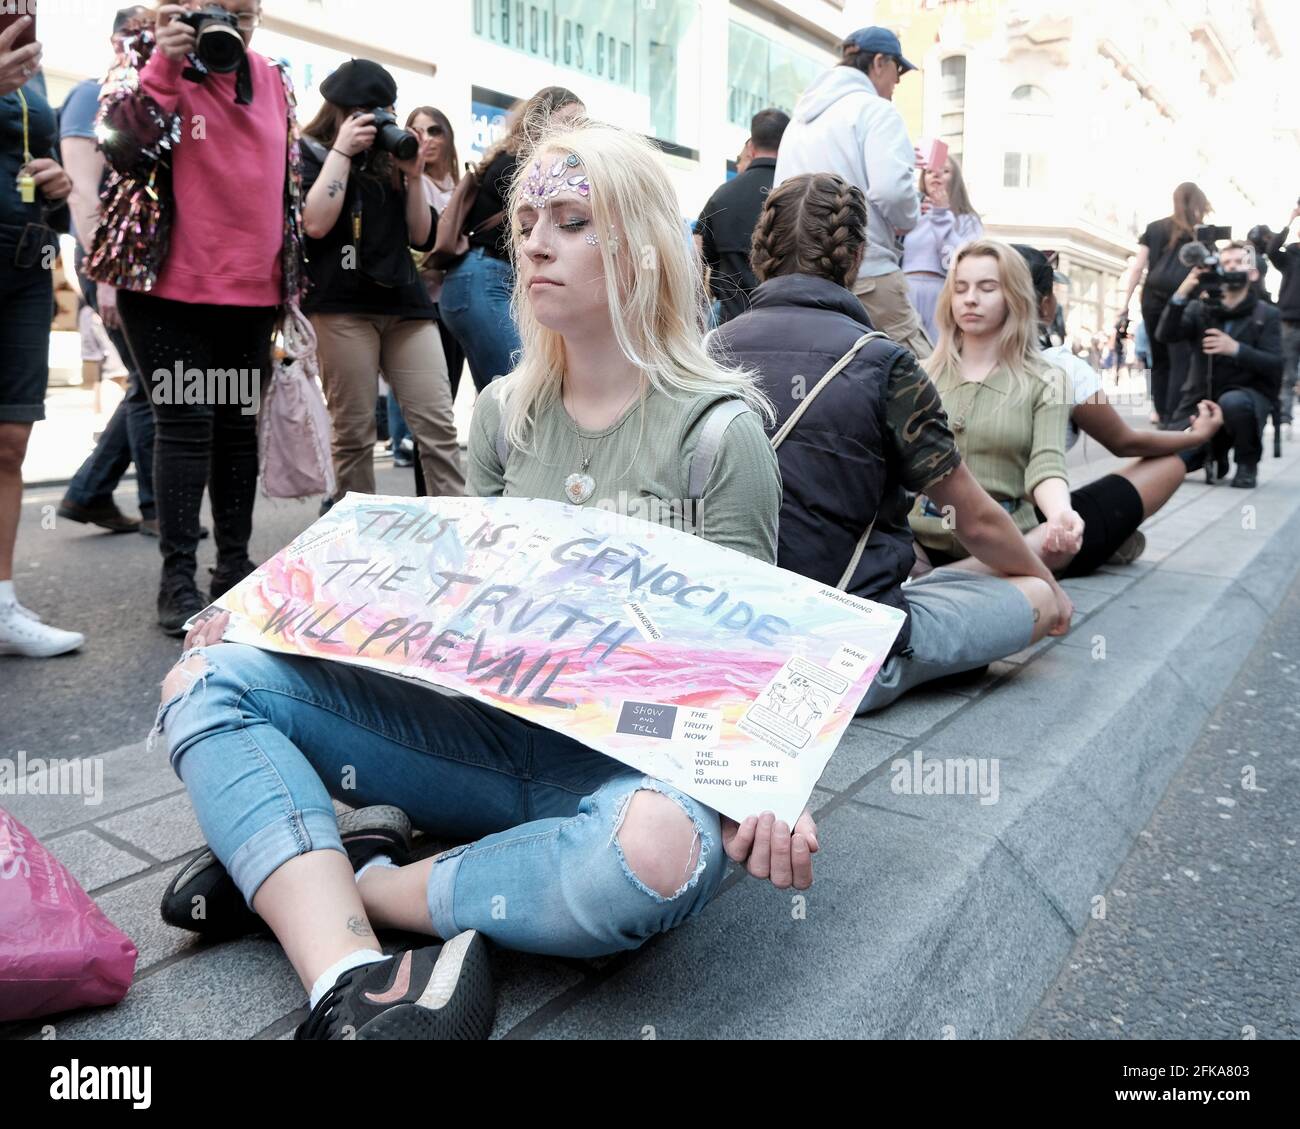 Un gruppo di persone si siede in strada e medita durante la protesta "per la libertà", contro il progetto di passaporto per il vaccino proposto nel Regno Unito. Foto Stock